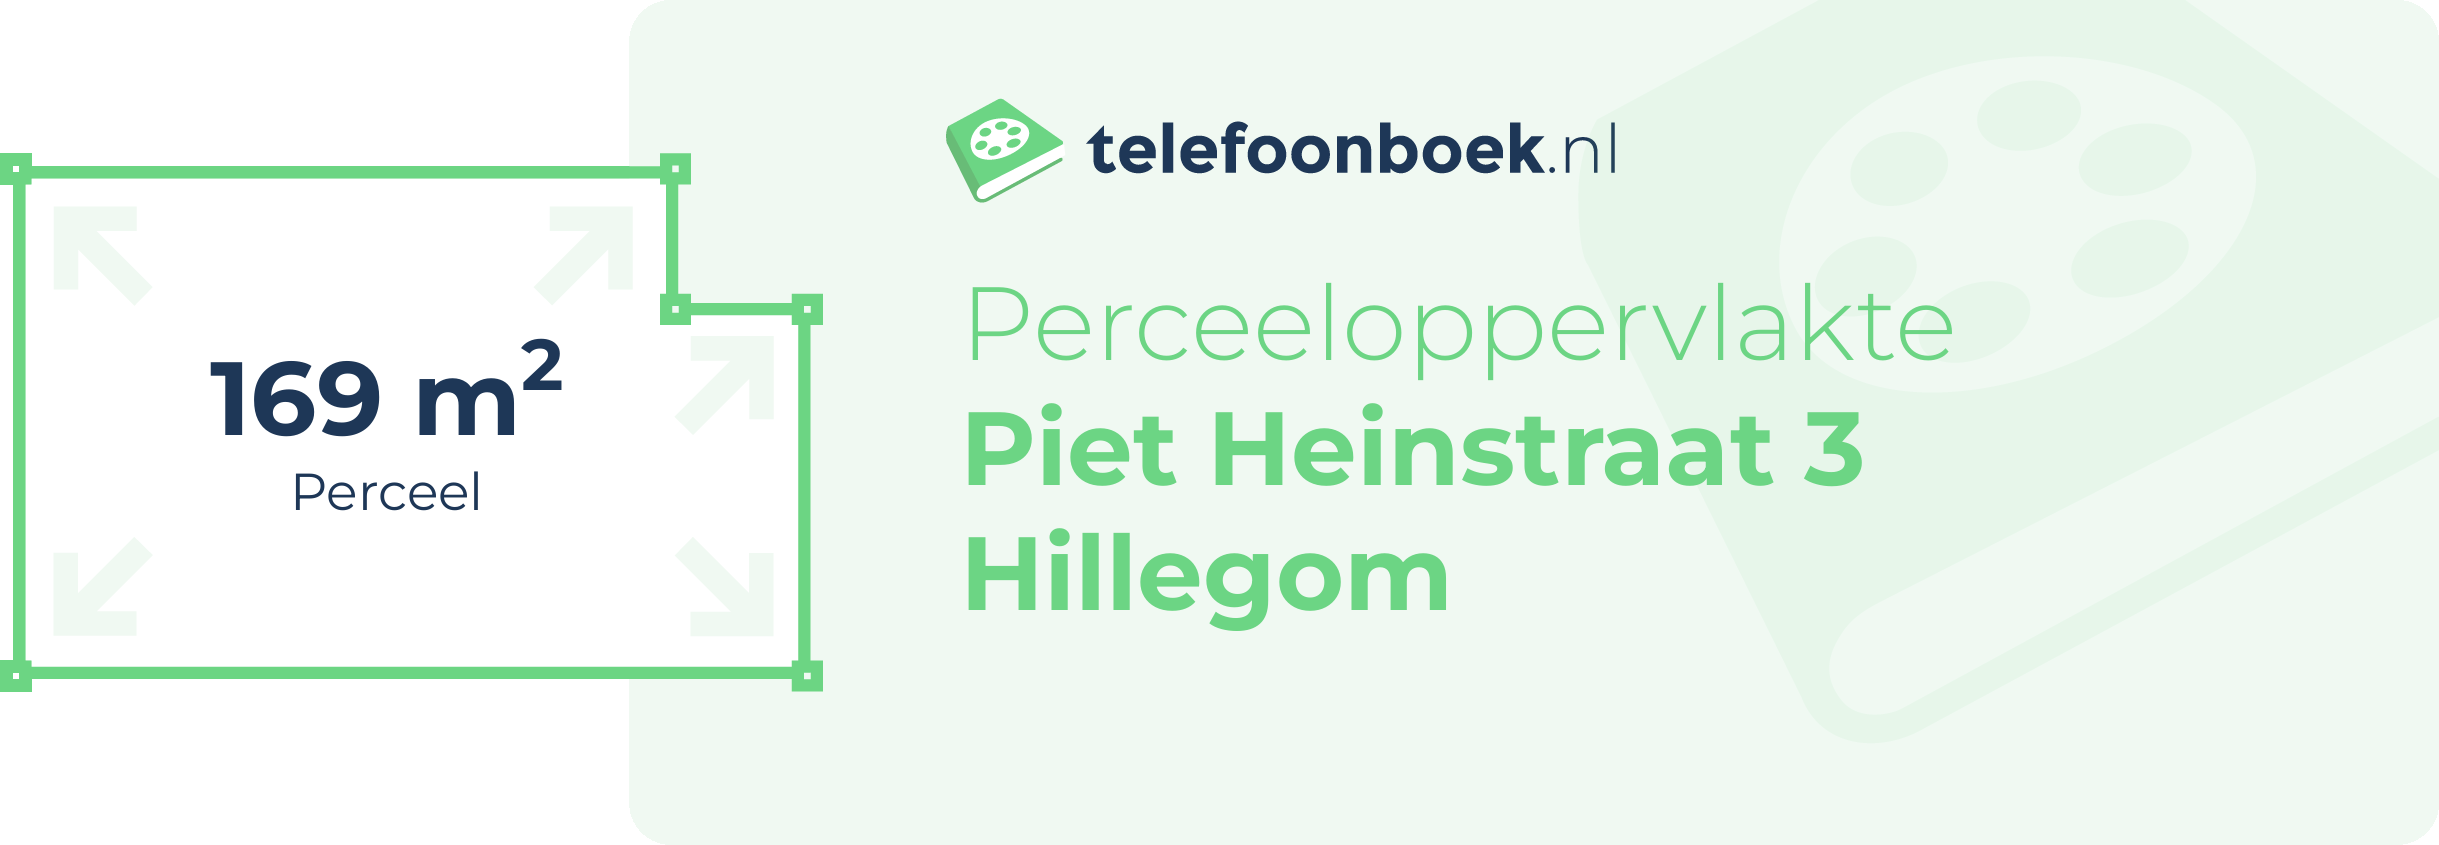 Perceeloppervlakte Piet Heinstraat 3 Hillegom